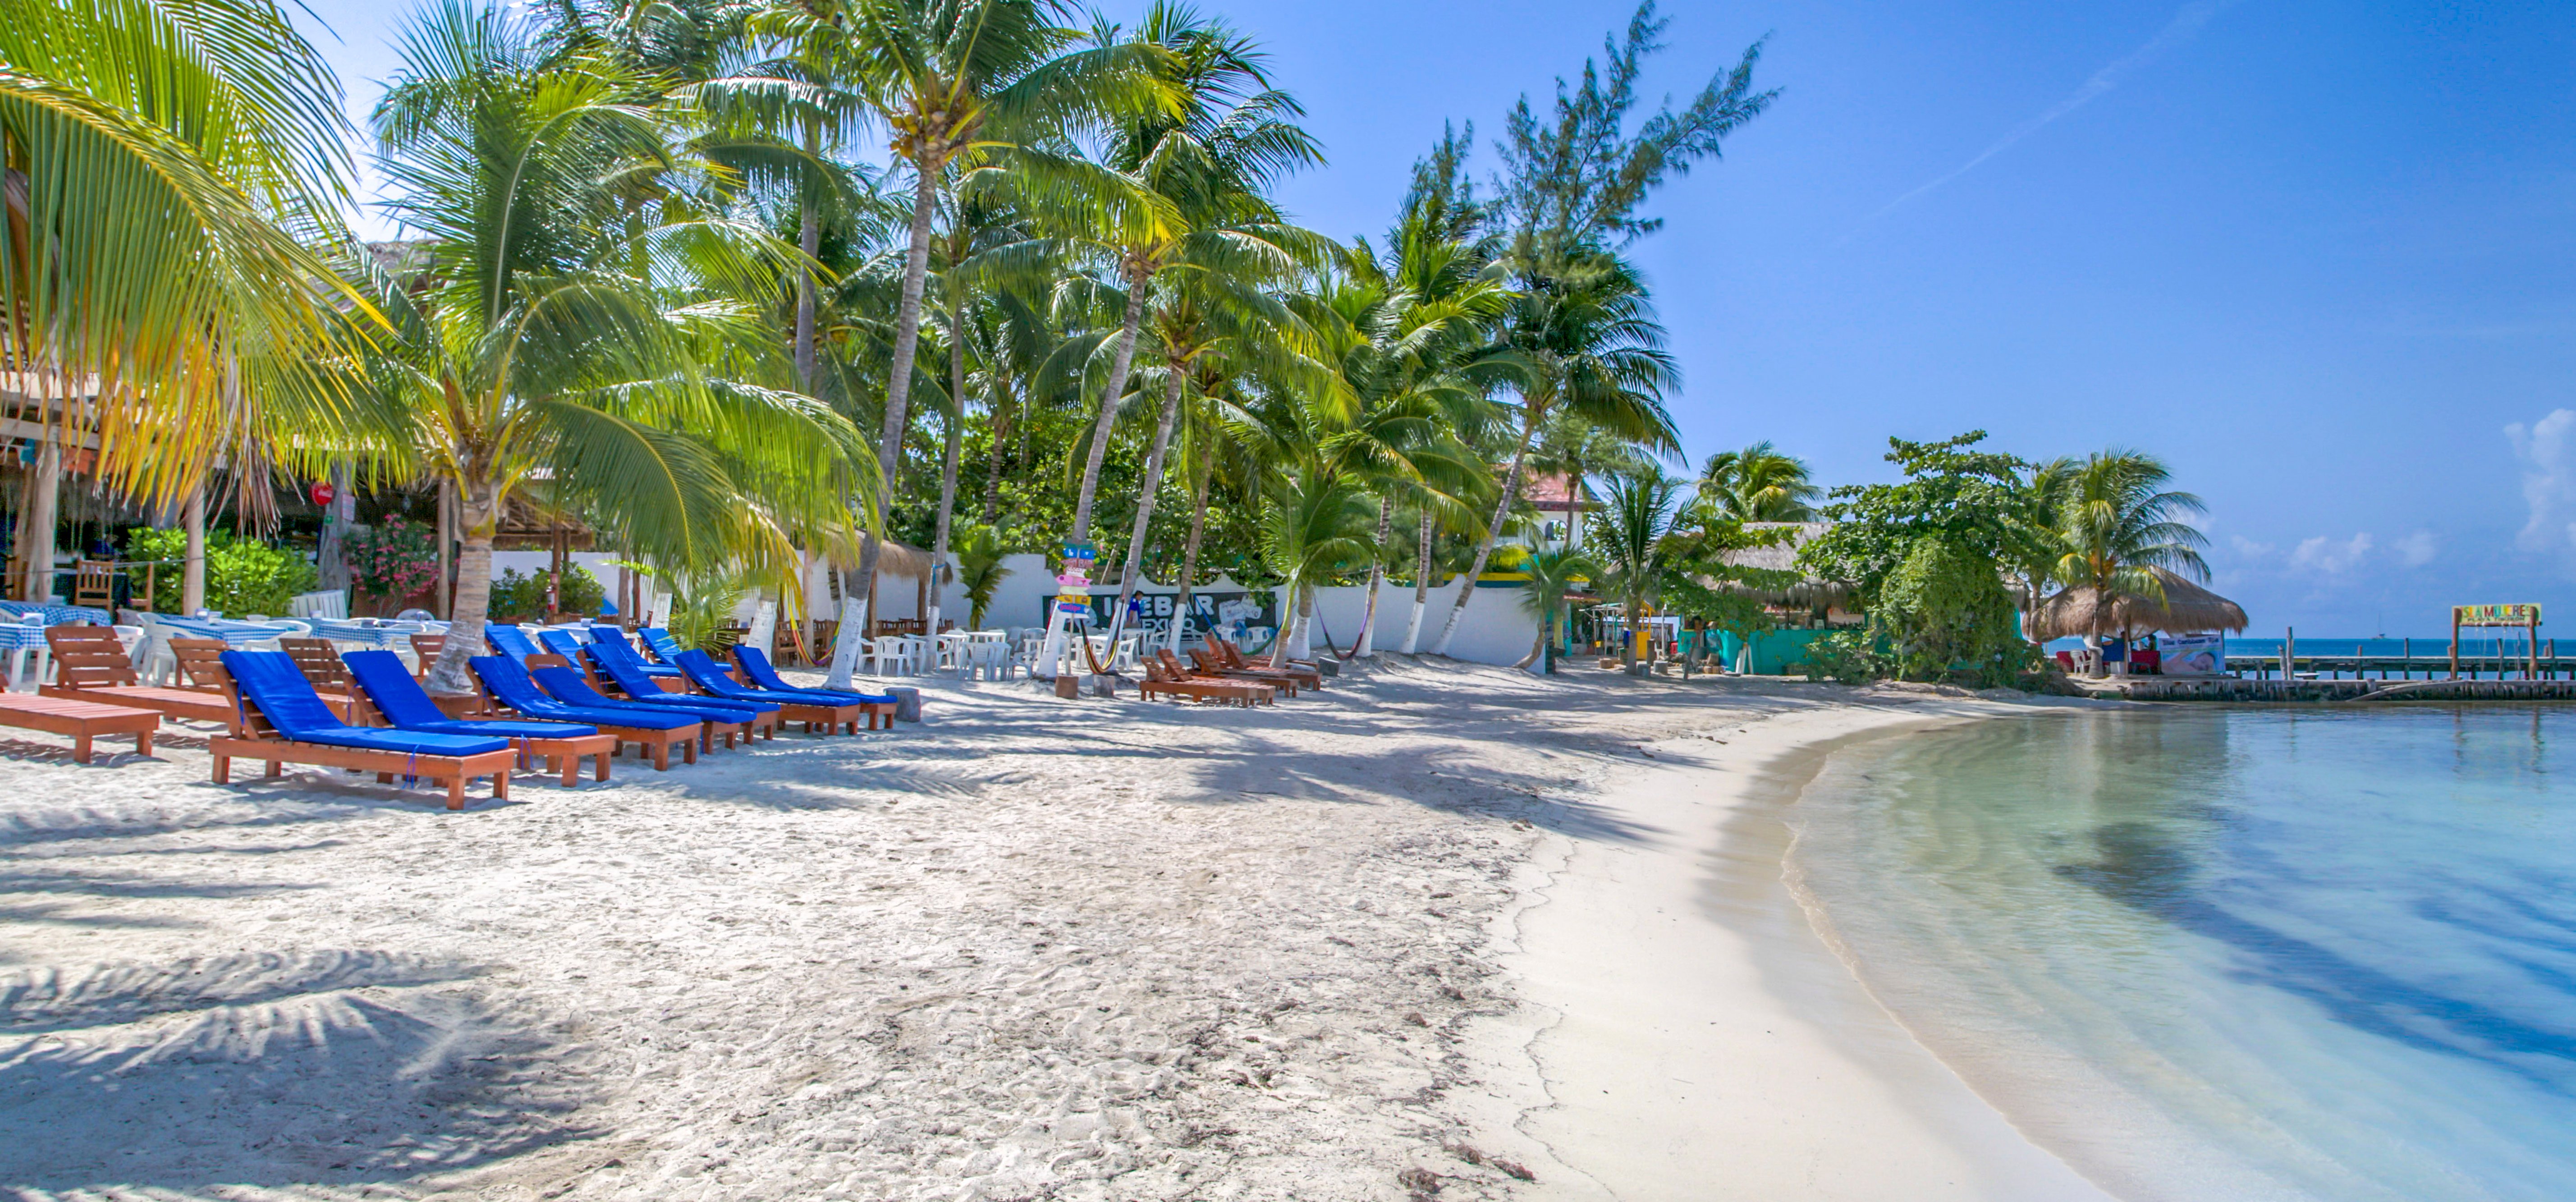 playa-mexico-beach-club-isla-mujeres-beach-clean-cancun-sailing